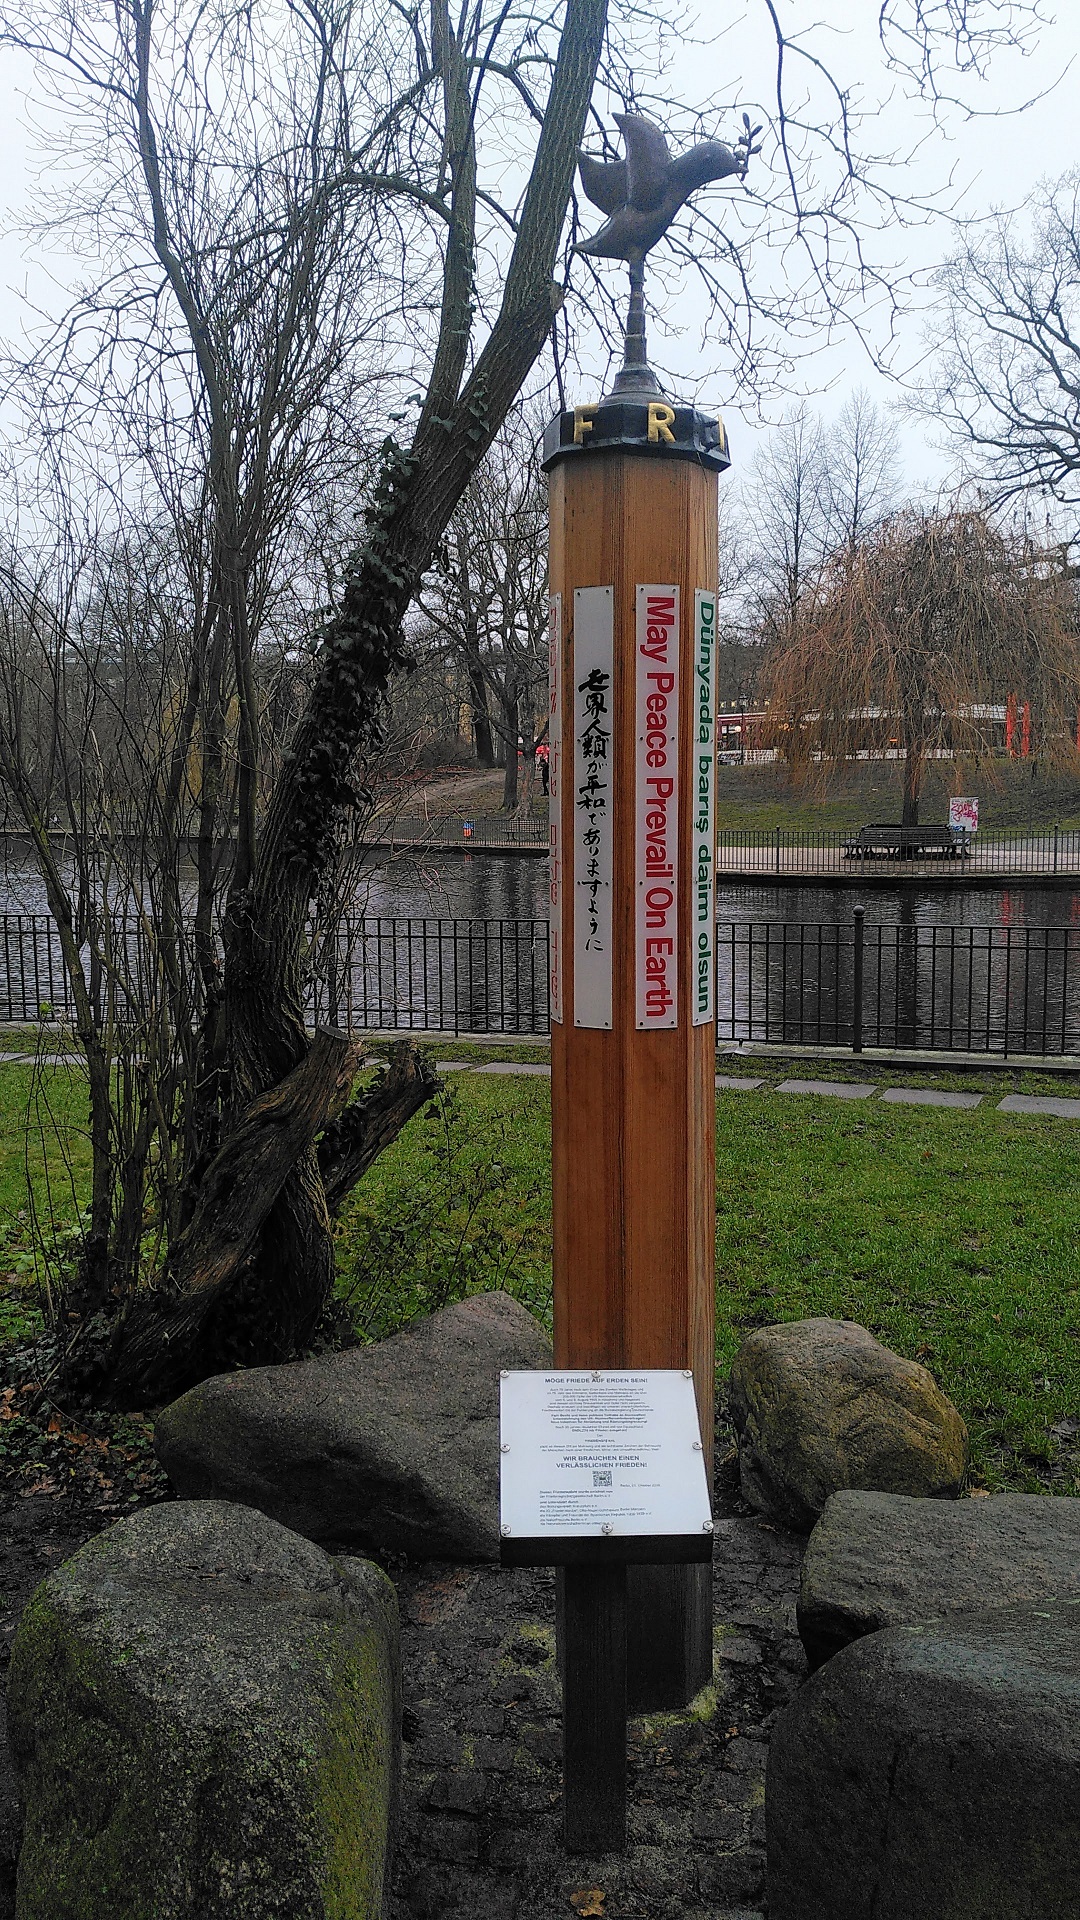 Hölzerner Friedenspfahl mit einer Friedenstaubenfigur auf der Spitze. Im Hintergrund der Teich,